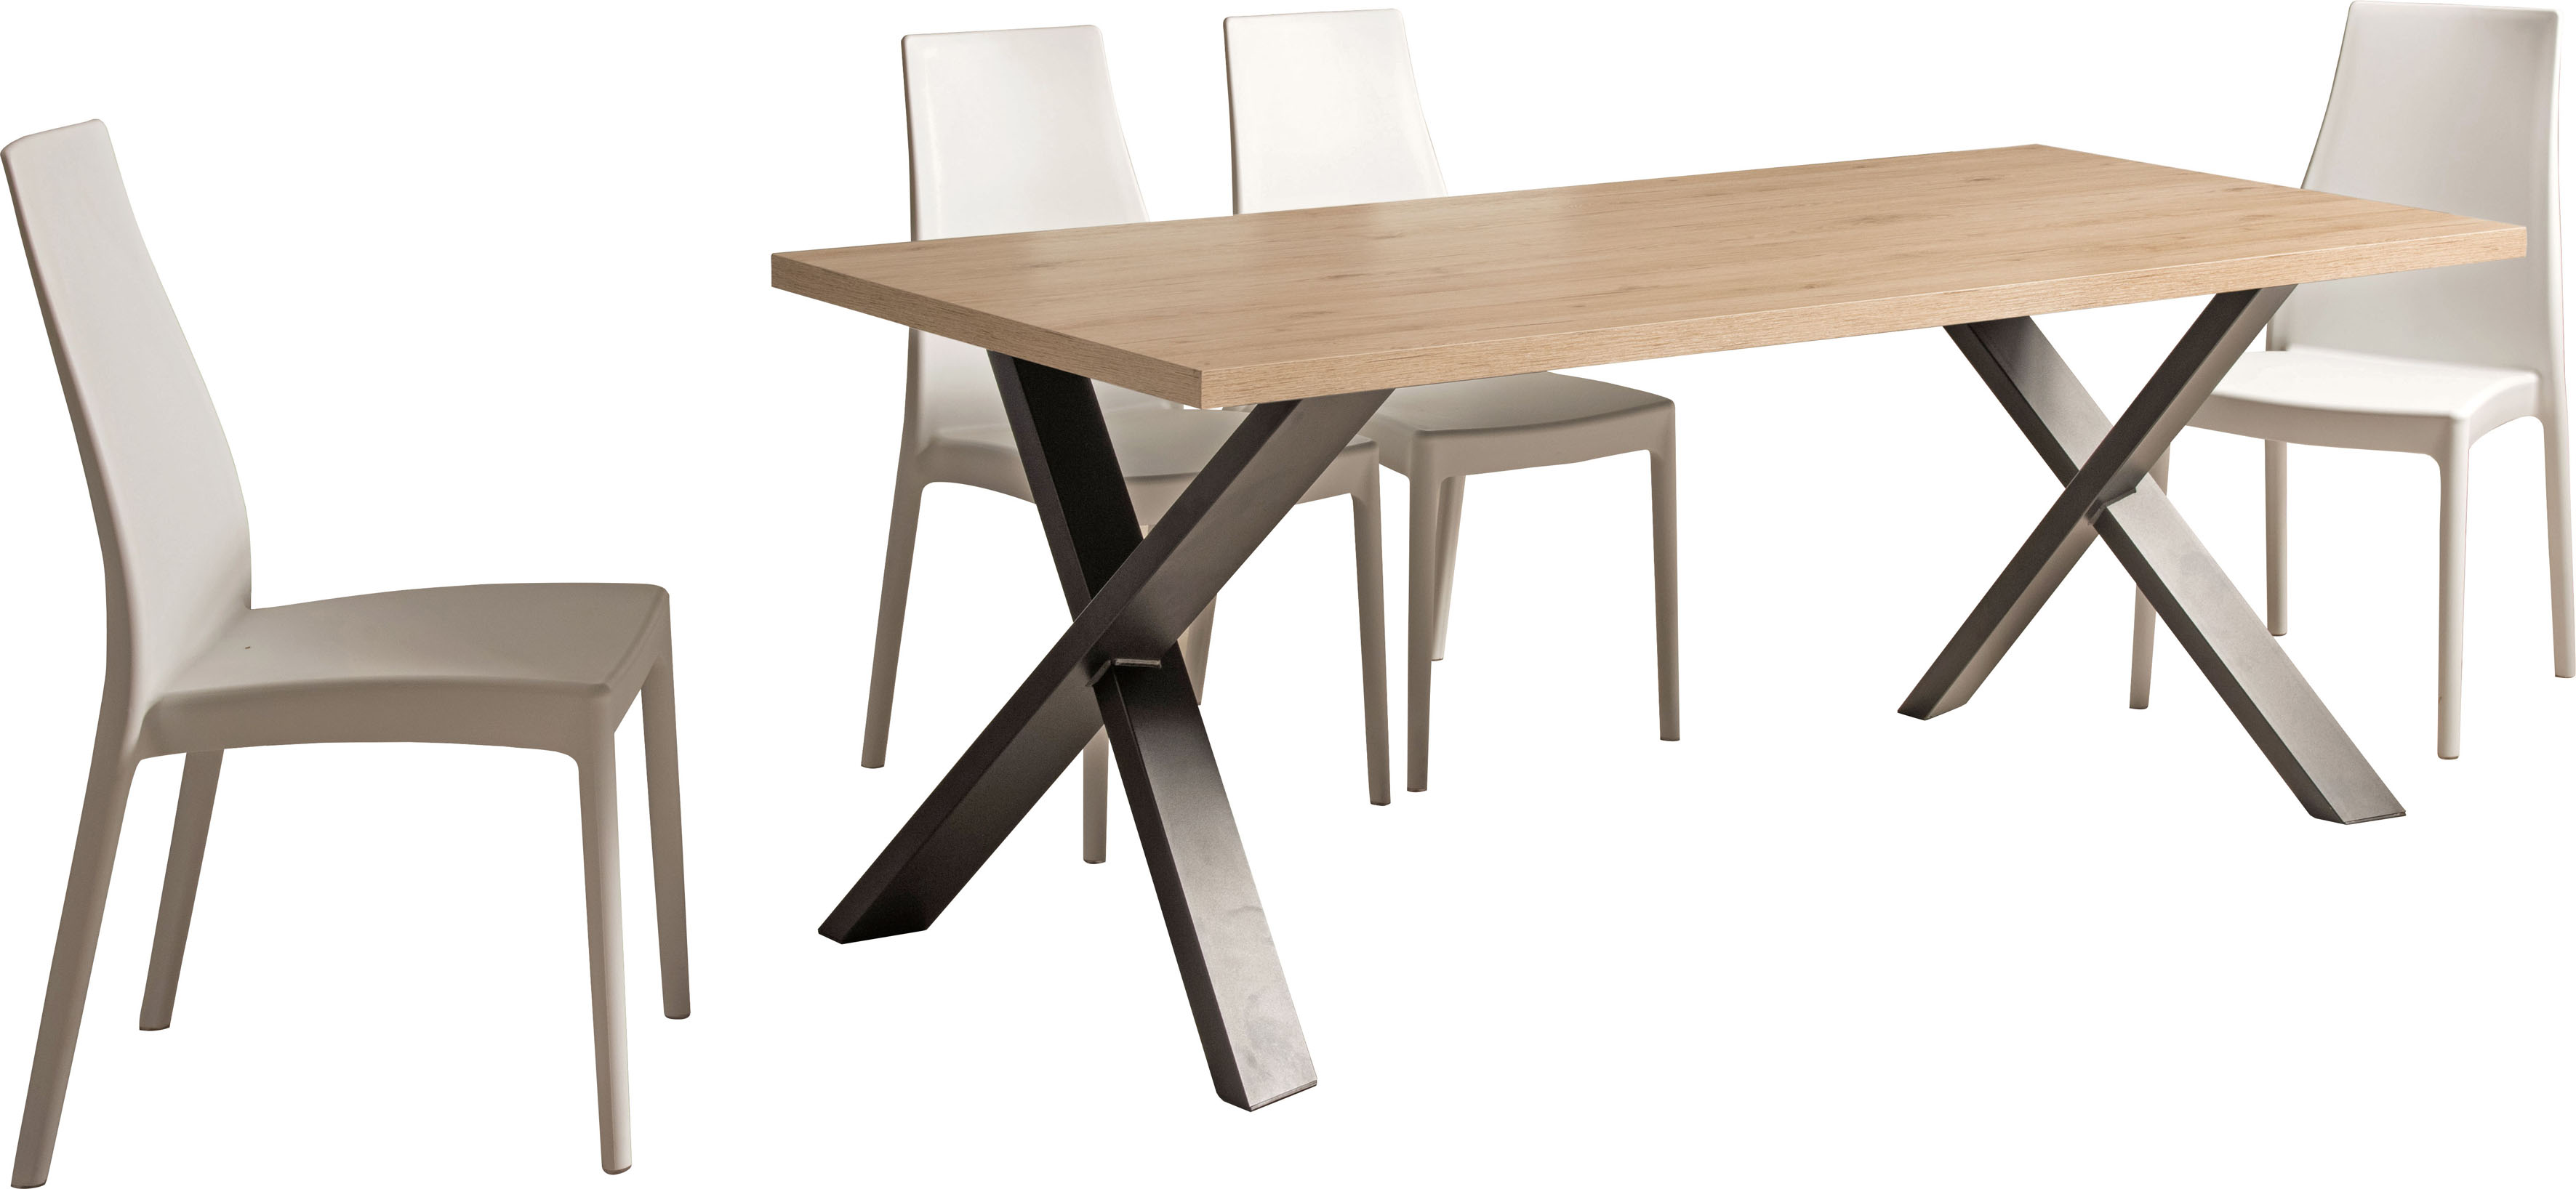 Home affaire Esstisch Genova, mit einer 4 cm starke Tischplatte, im hochwertigen italienischen Design, mit einem Metallgestell